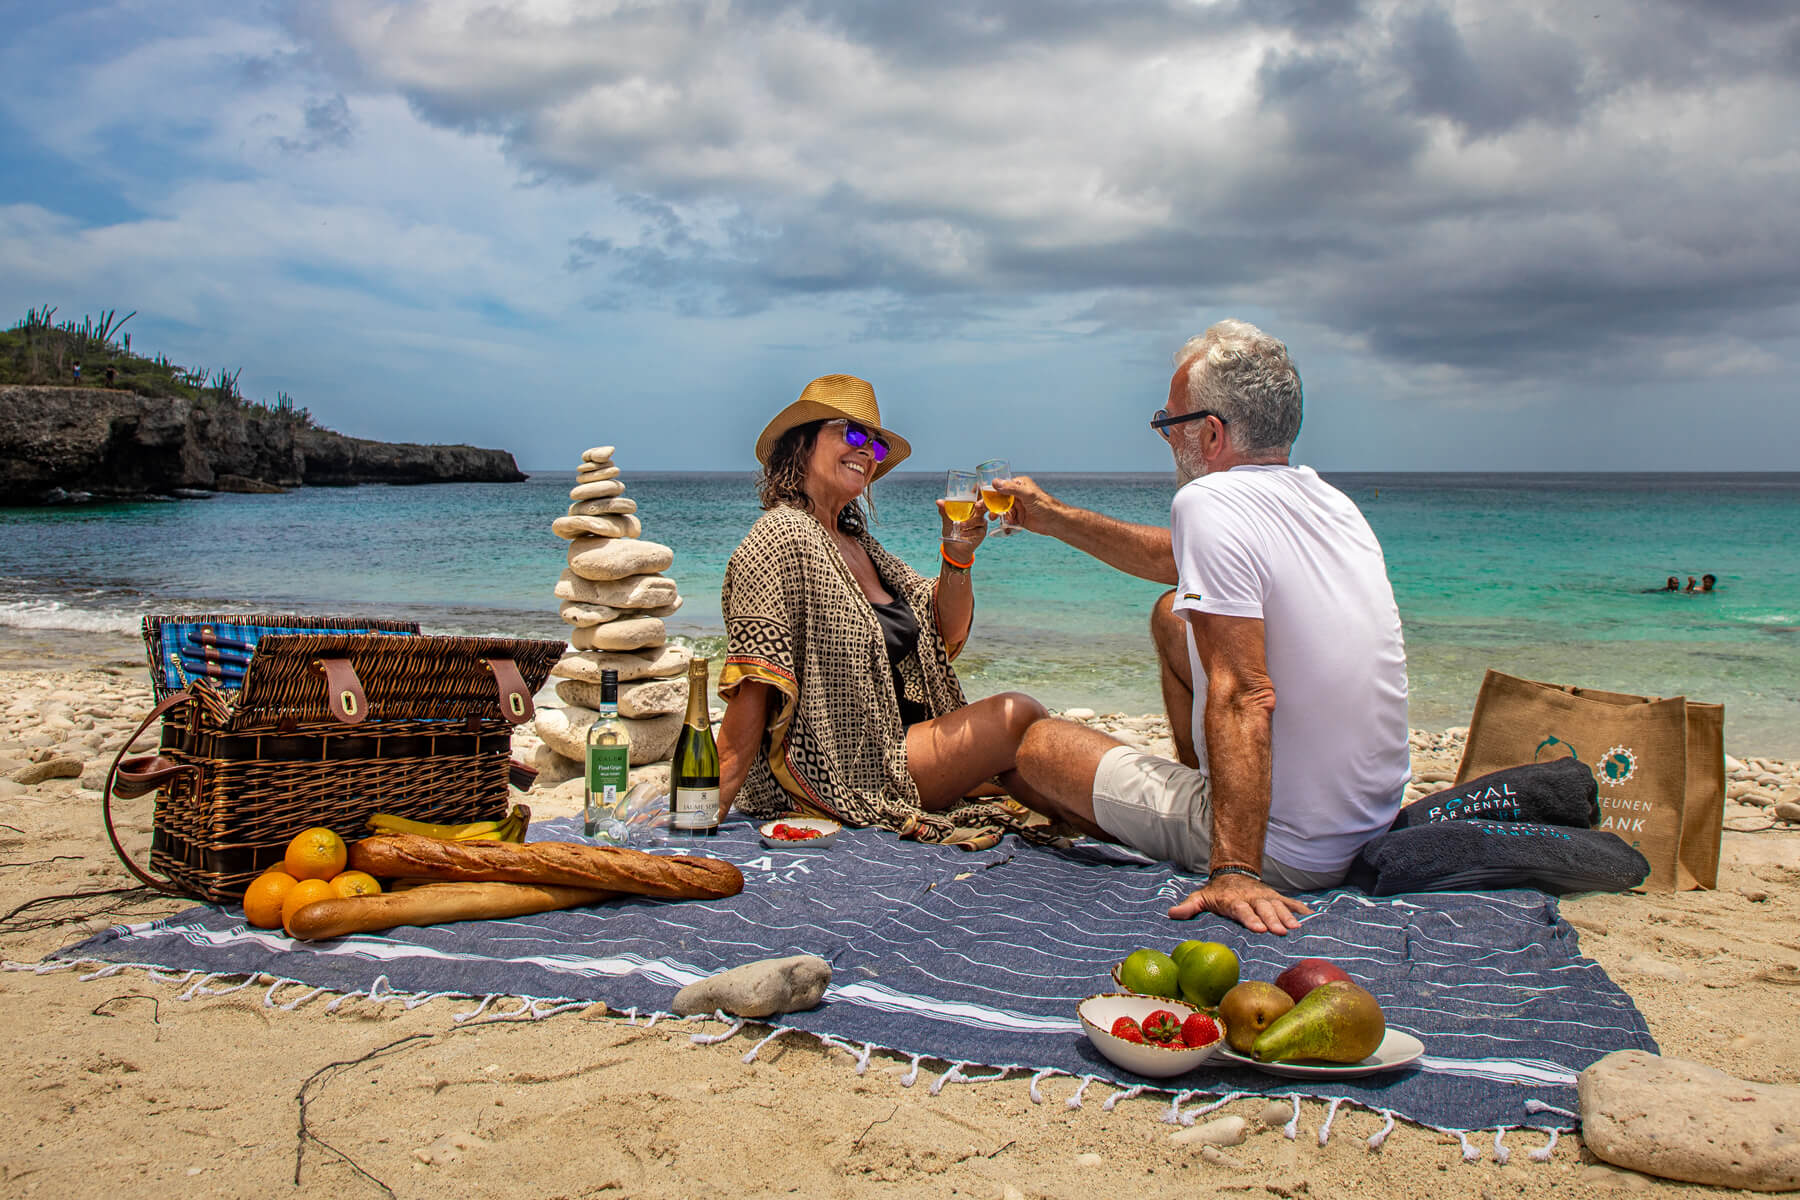 Bonaire picnic